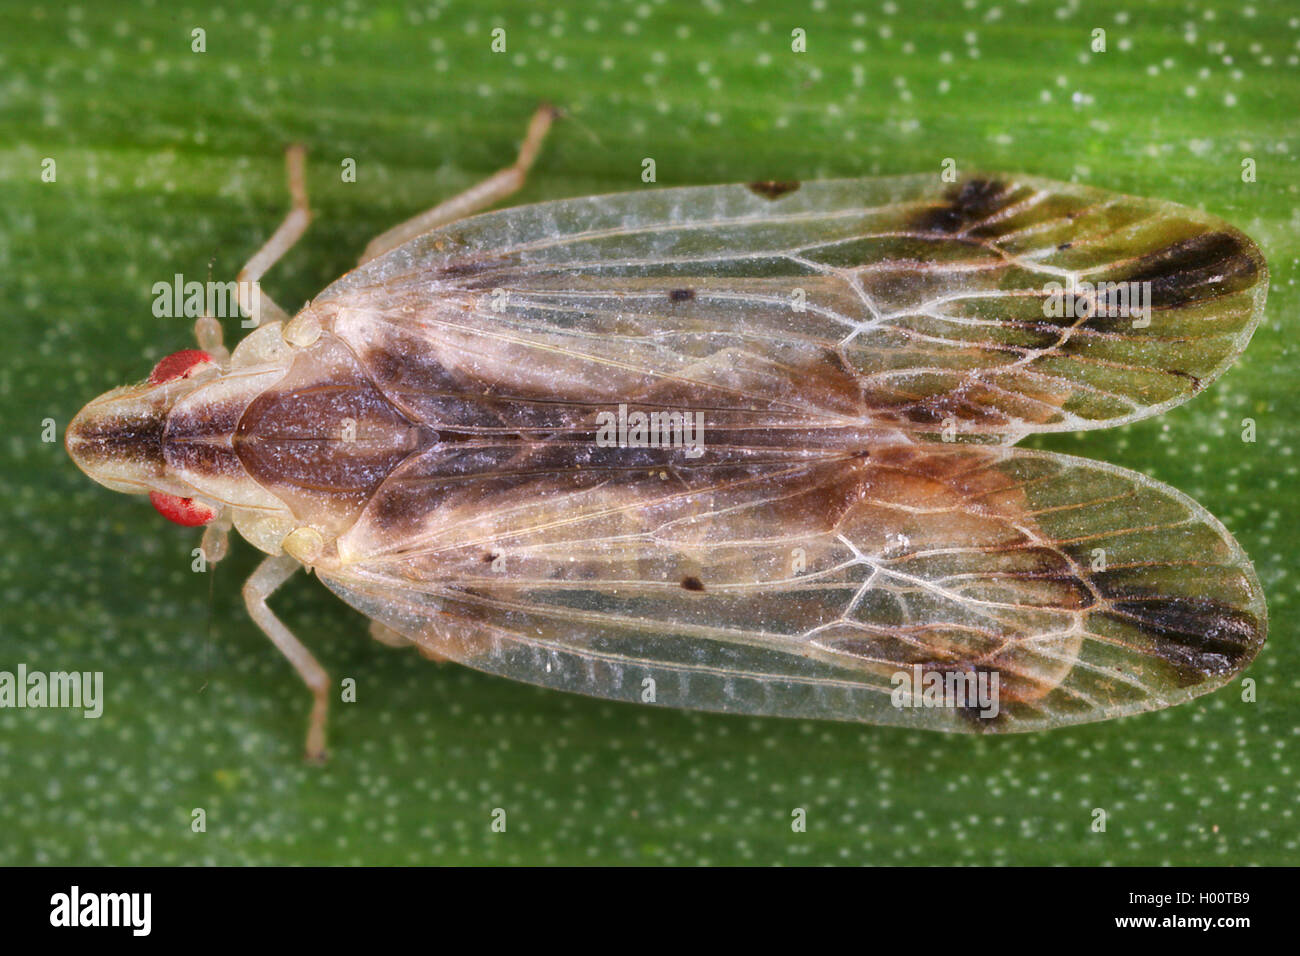 Tropiduchid planthopper (Tropiduchidae), sits on a leaf, Costa Rica Stock Photo